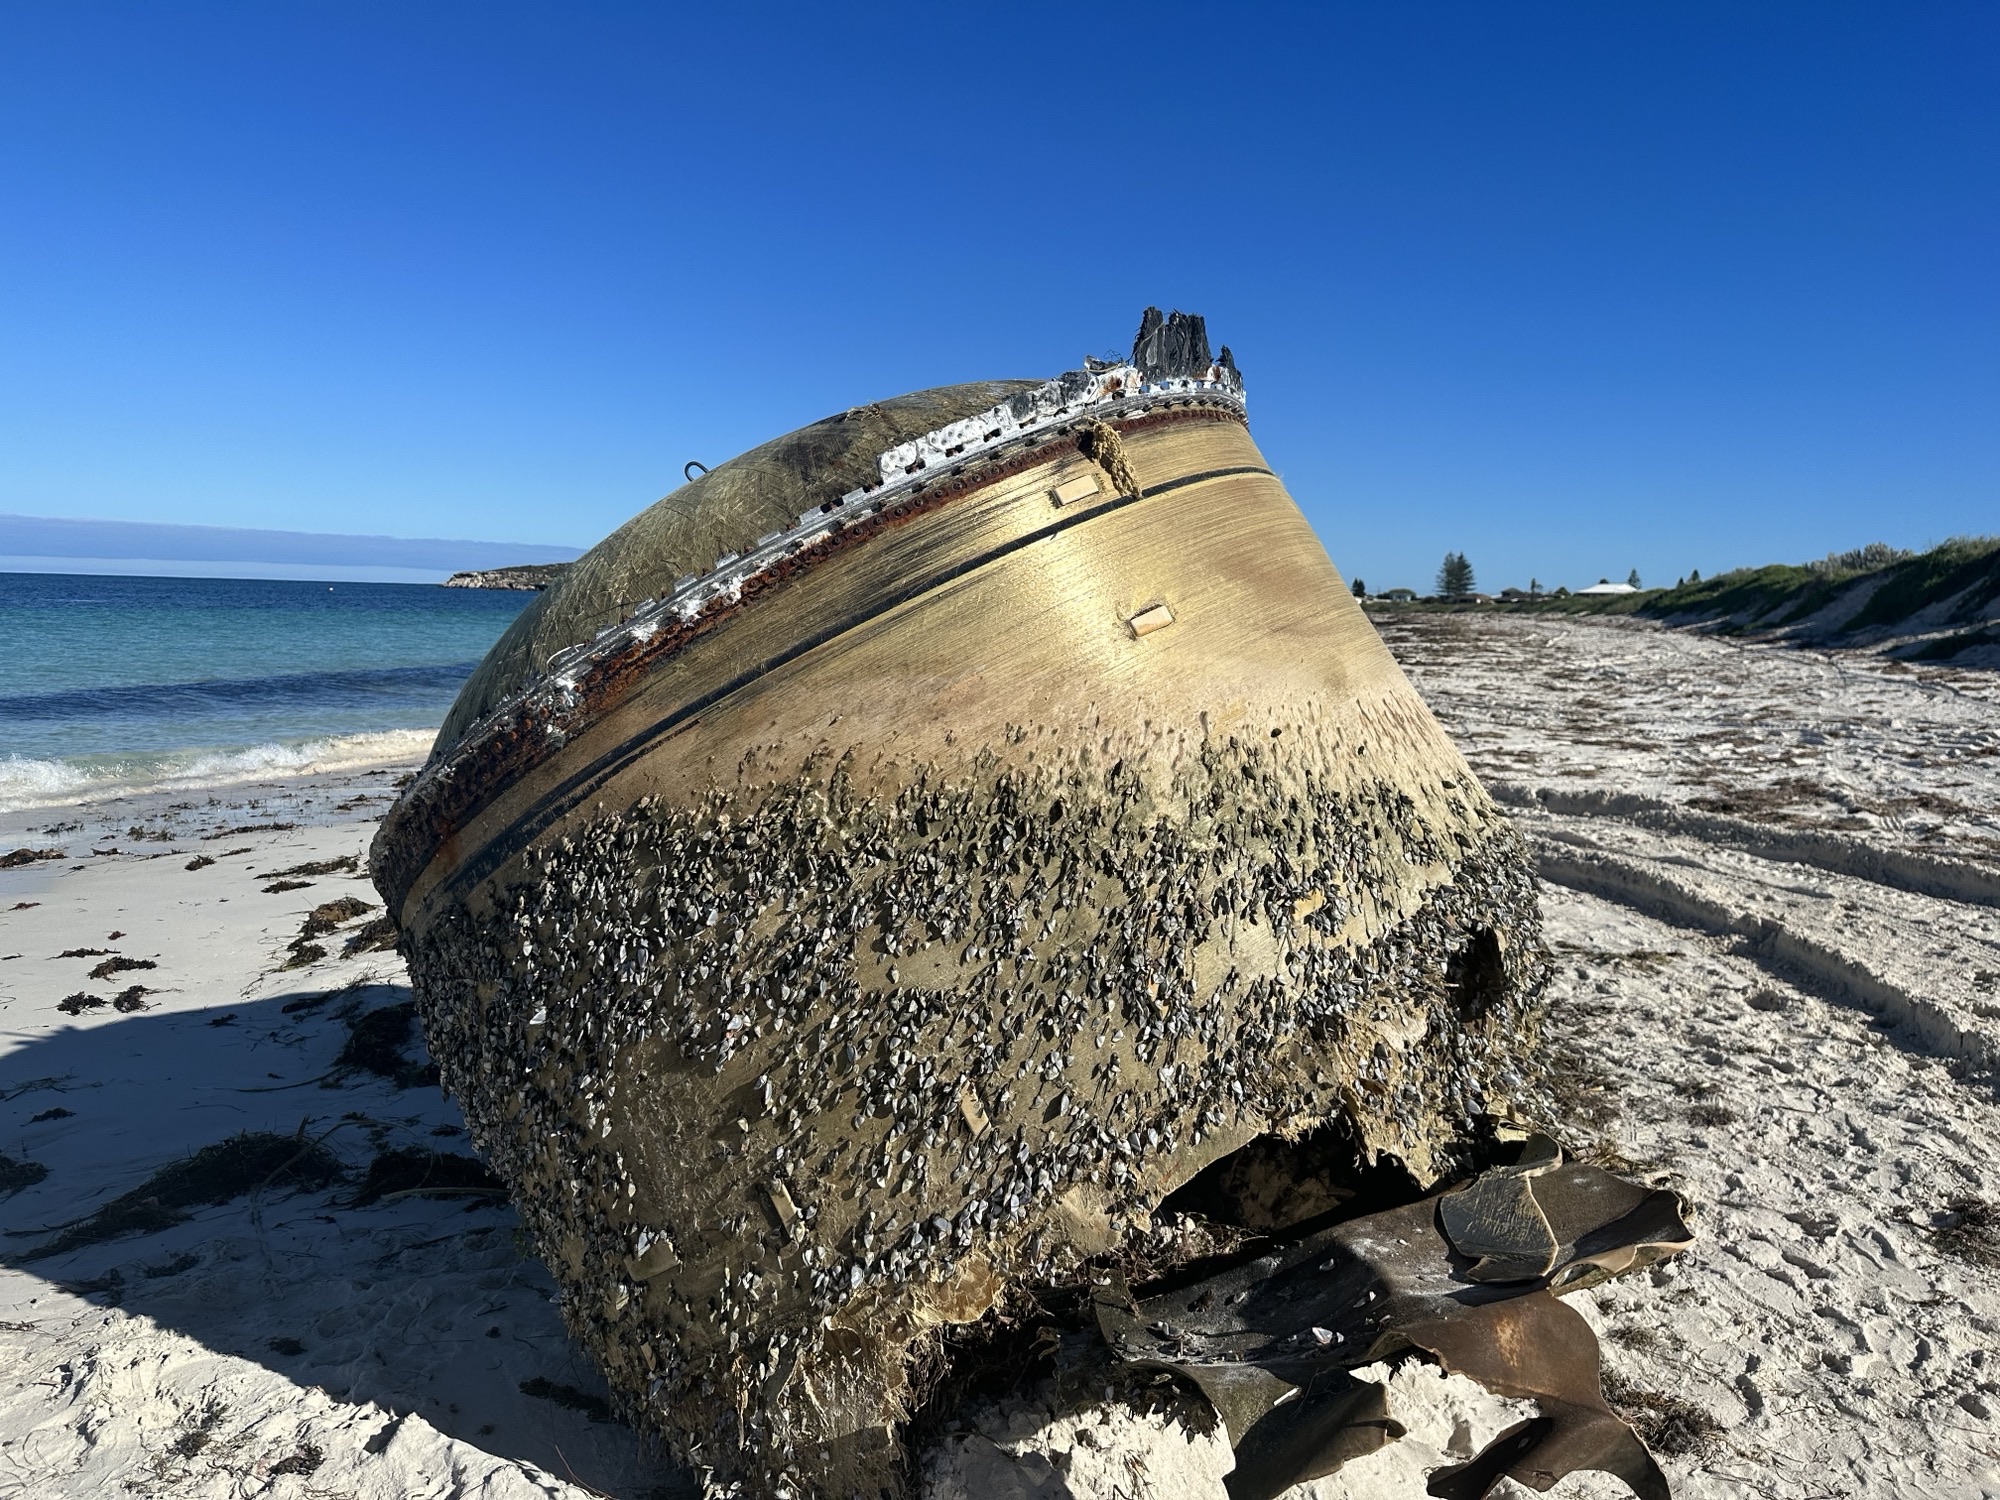 Αυστραλία: Δόθηκε απάντηση για το μυστηριώδες αντικείμενο που ξεβράστηκε σε παραλία